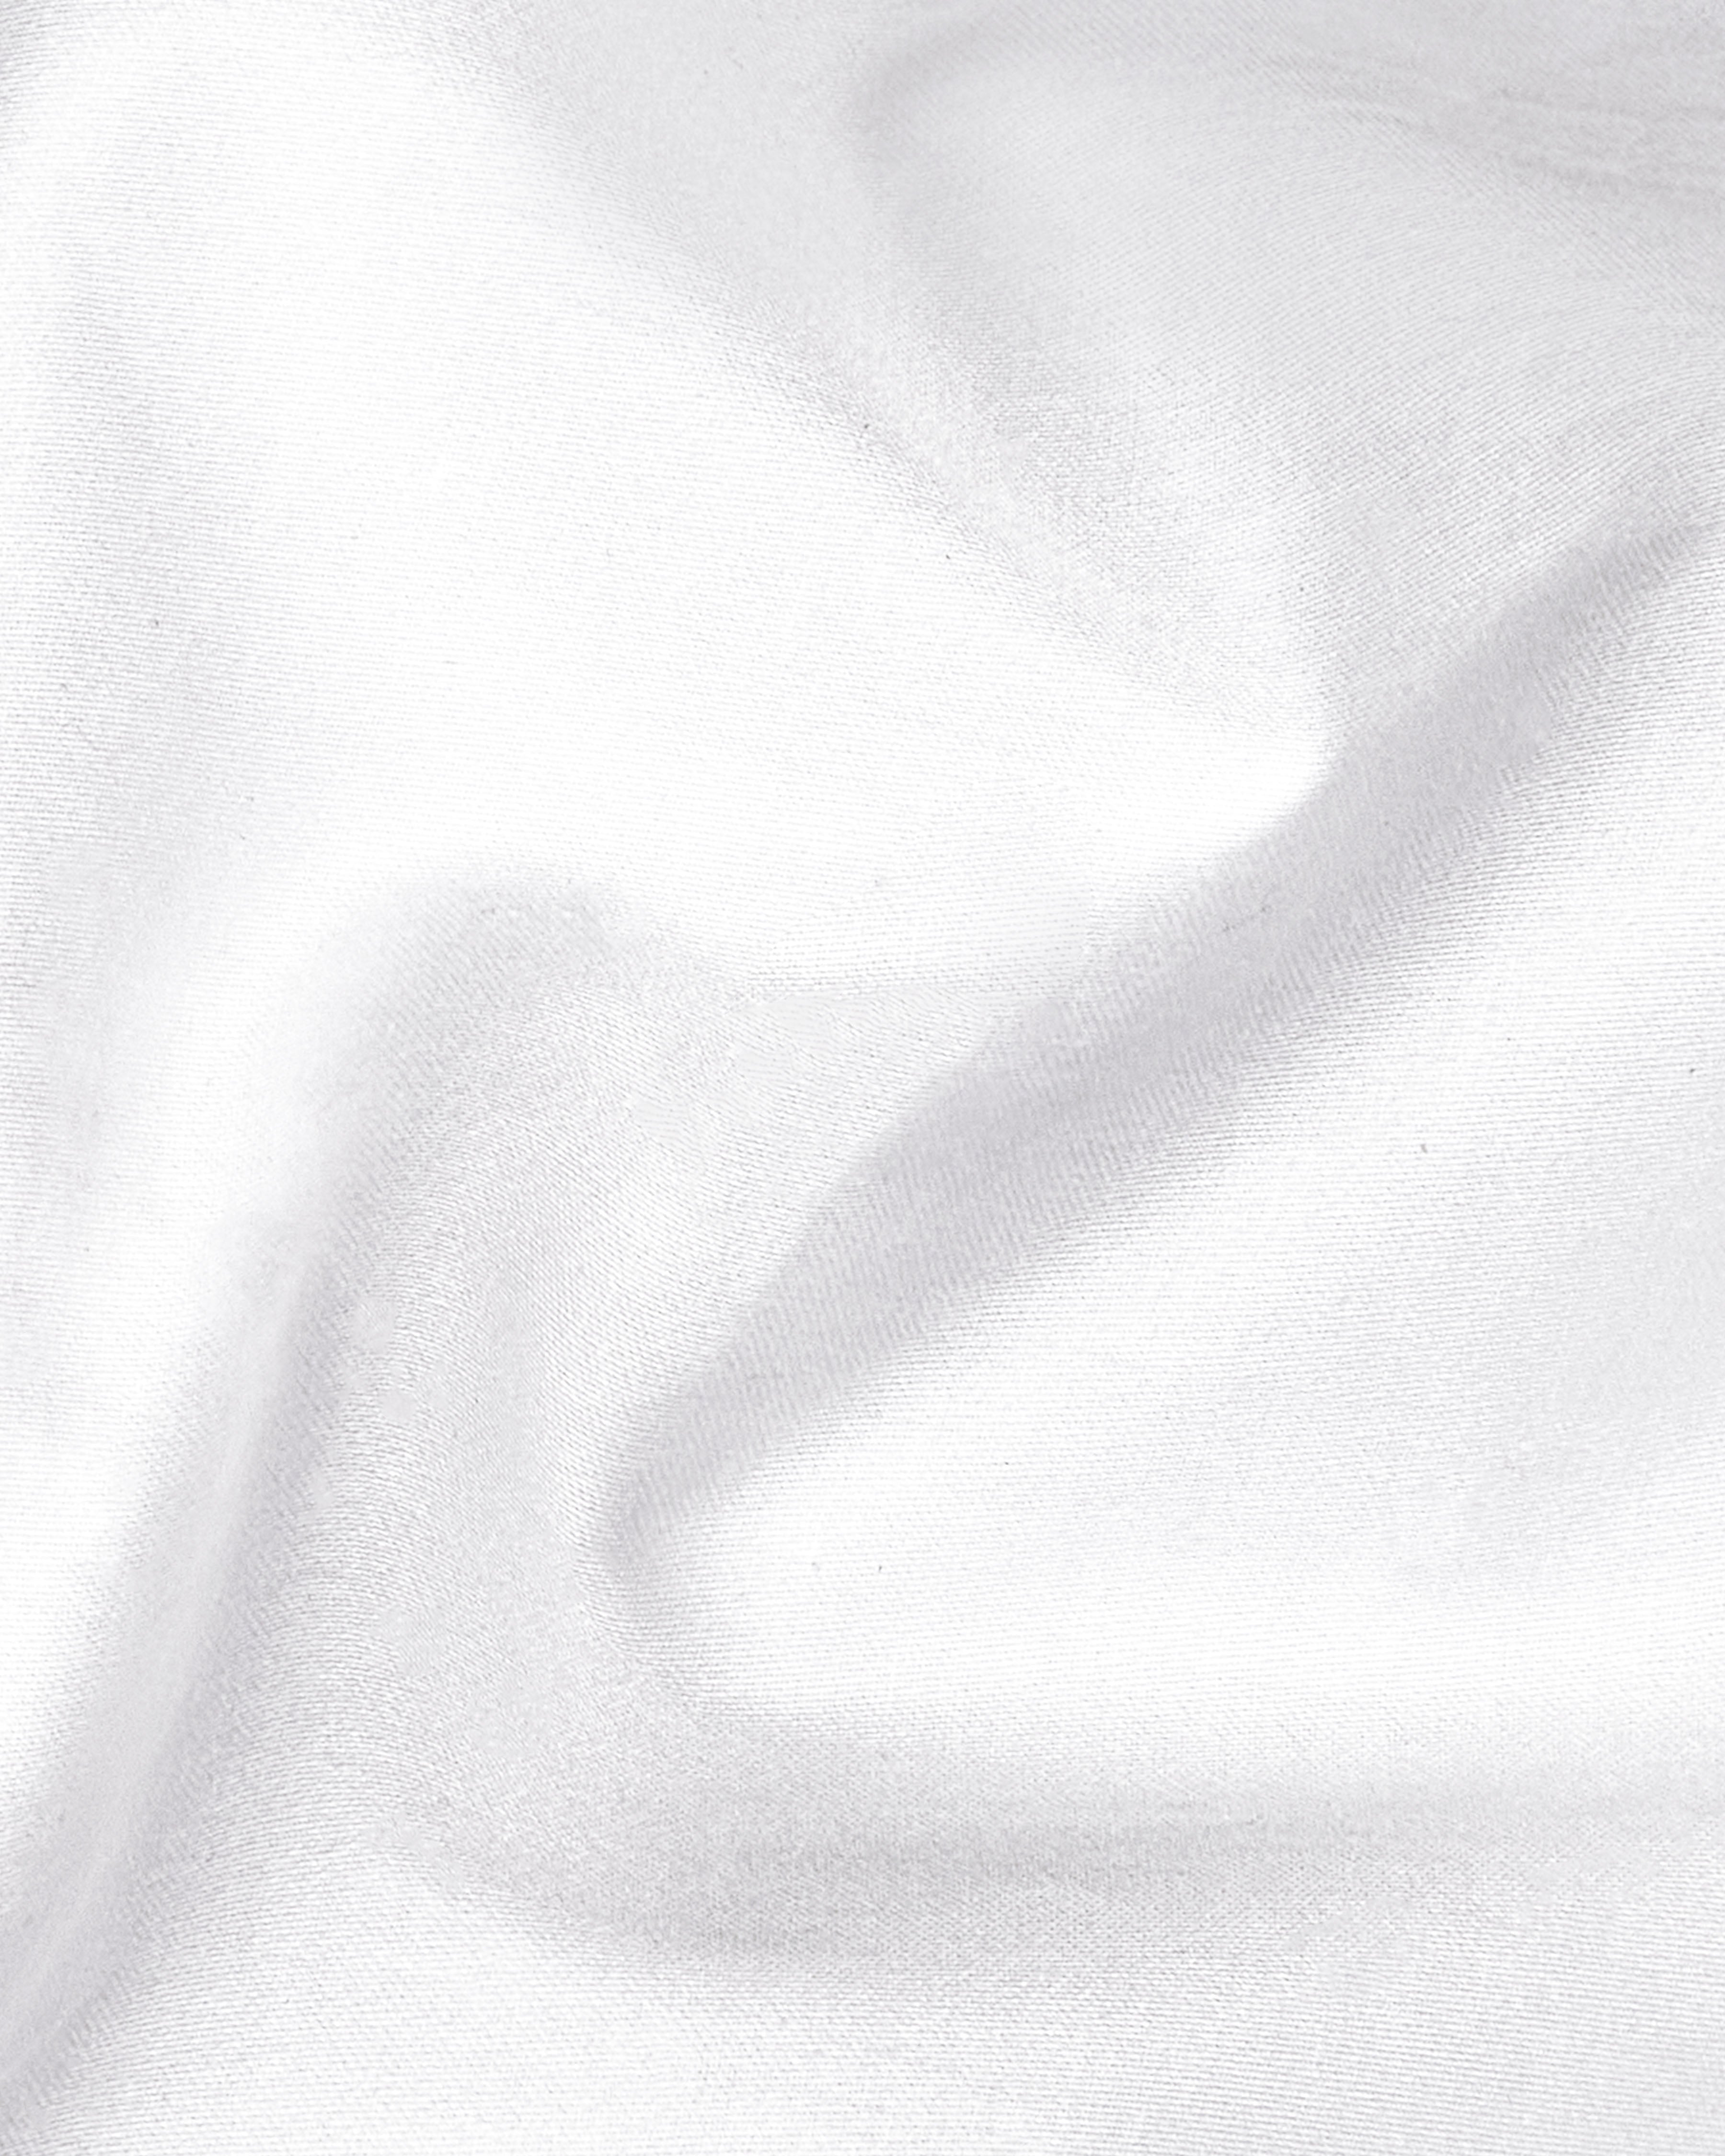 Bright White with Multicolour Card Embroidered Super Soft Premium Cotton Kurta Shirt 2670-KS-E027-38, 2670-KS-E027-H-38, 2670-KS-E027-39, 2670-KS-E027-H-39, 2670-KS-E027-40, 2670-KS-E027-H-40, 2670-KS-E027-42, 2670-KS-E027-H-42, 2670-KS-E027-44, 2670-KS-E027-H-44, 2670-KS-E027-46, 2670-KS-E027-H-46, 2670-KS-E027-48, 2670-KS-E027-H-48, 2670-KS-E027-50, 2670-KS-E027-H-50, 2670-KS-E027-52, 2670-KS-E027-H-52